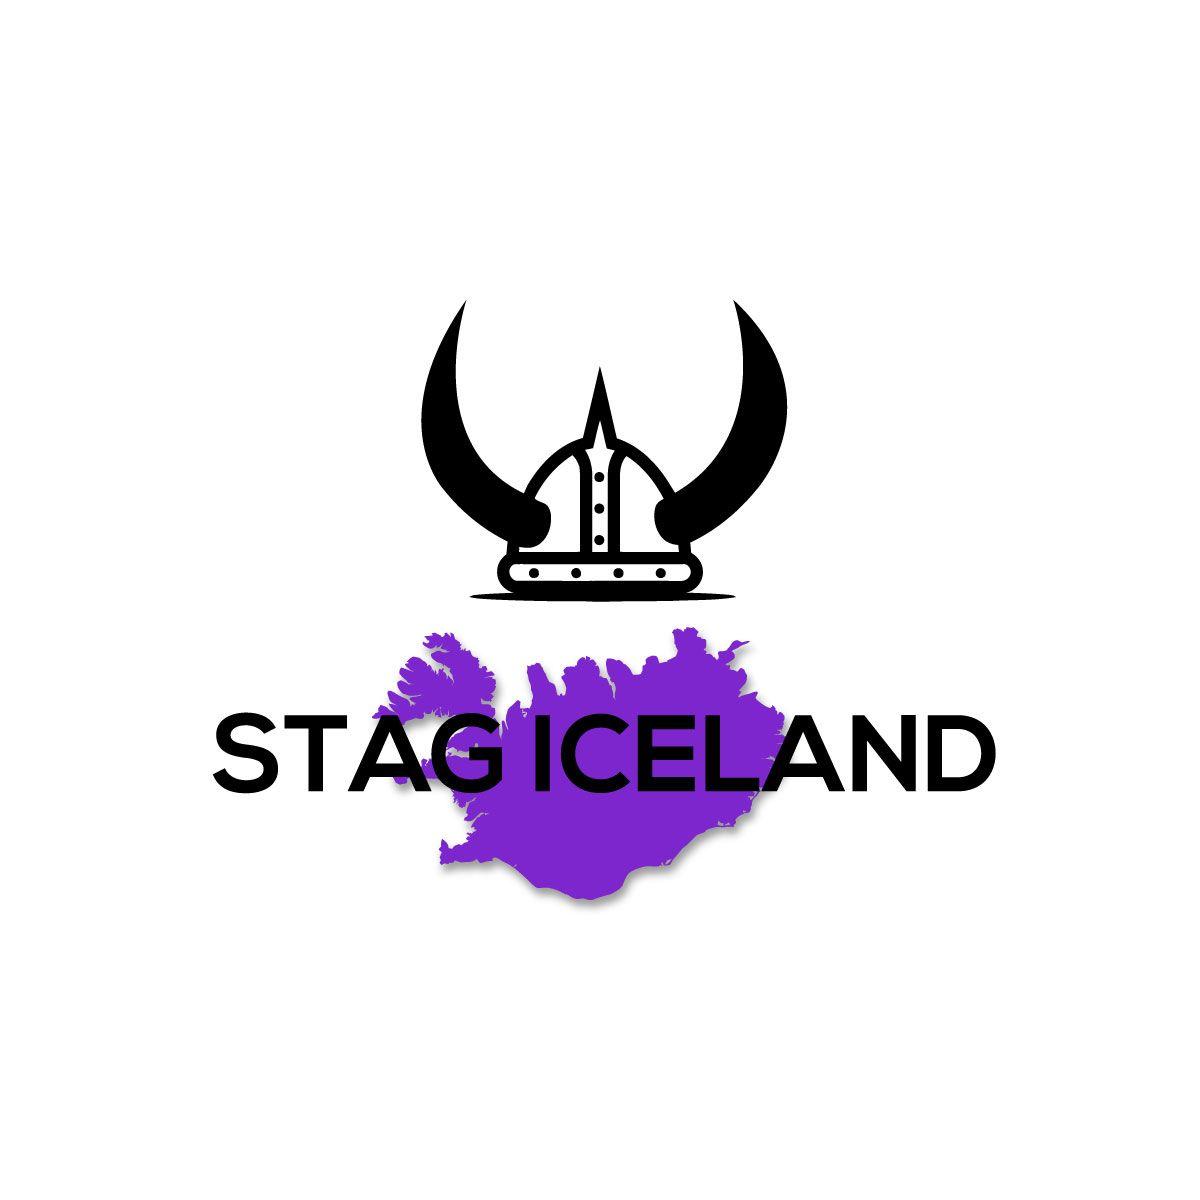 Iceland Logo - Logo Design for Stag Iceland by Logomacker 2. Design